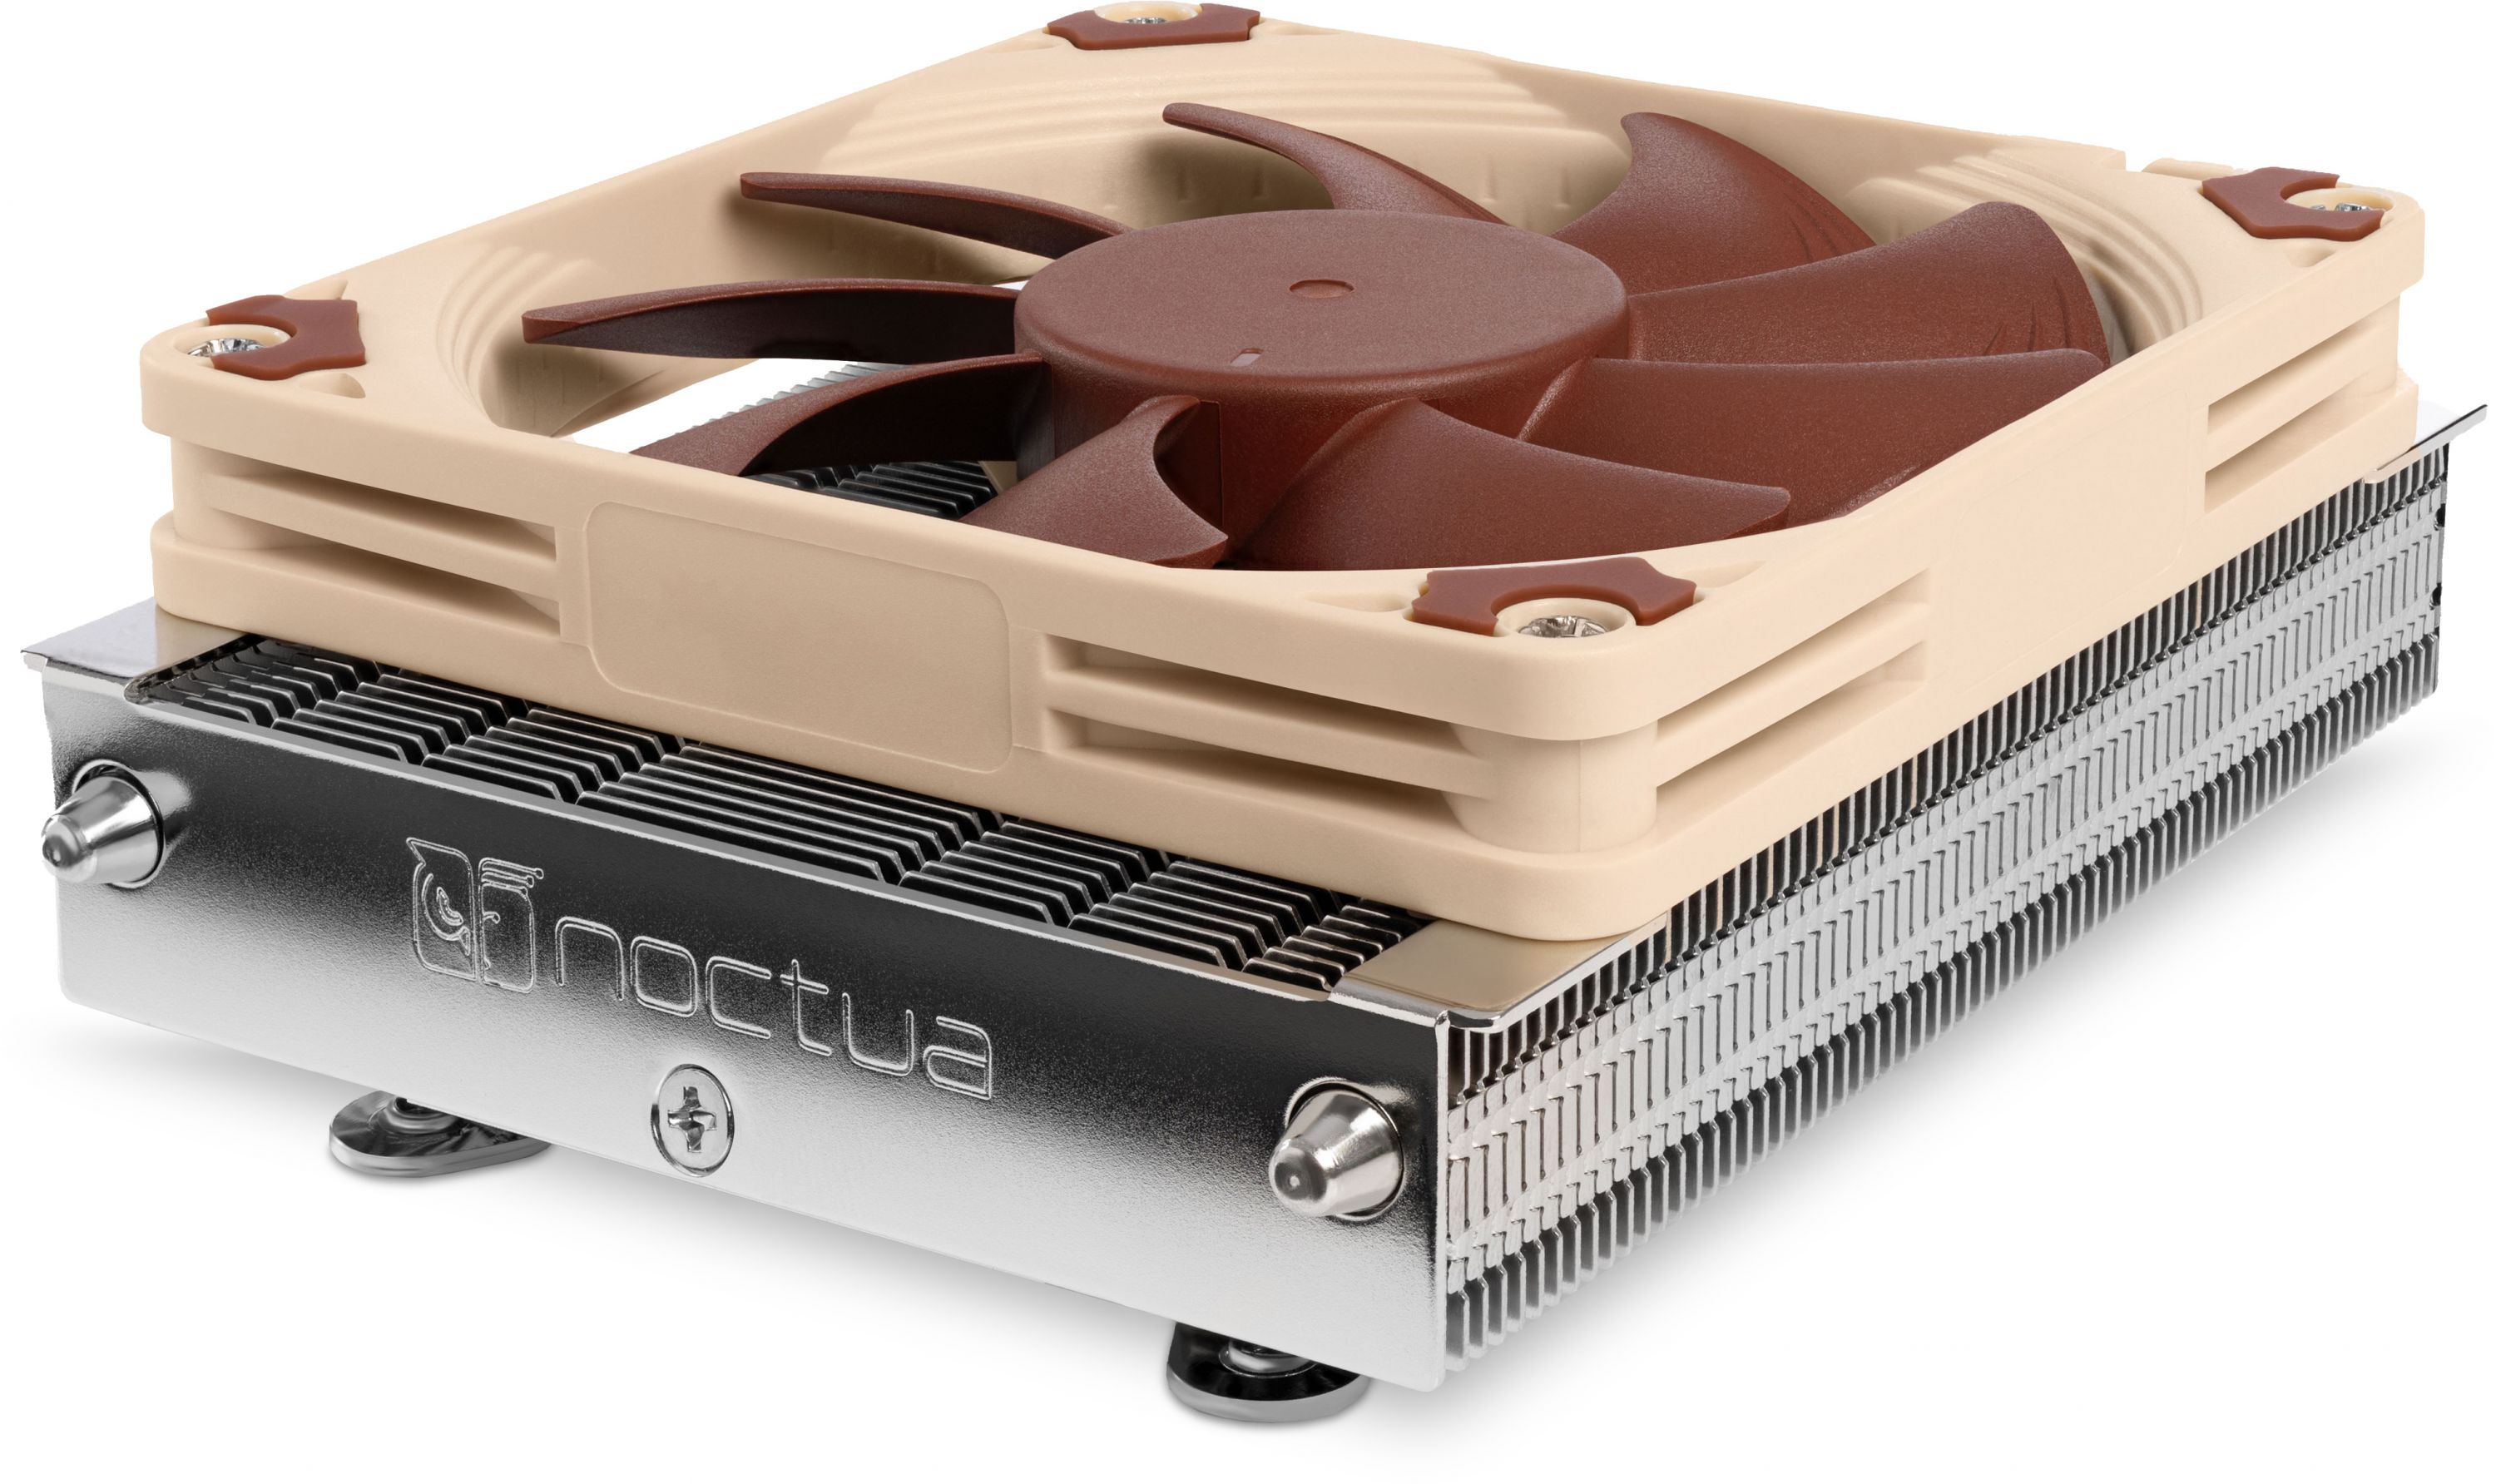 Noctua NH-U12S CPU Cooler